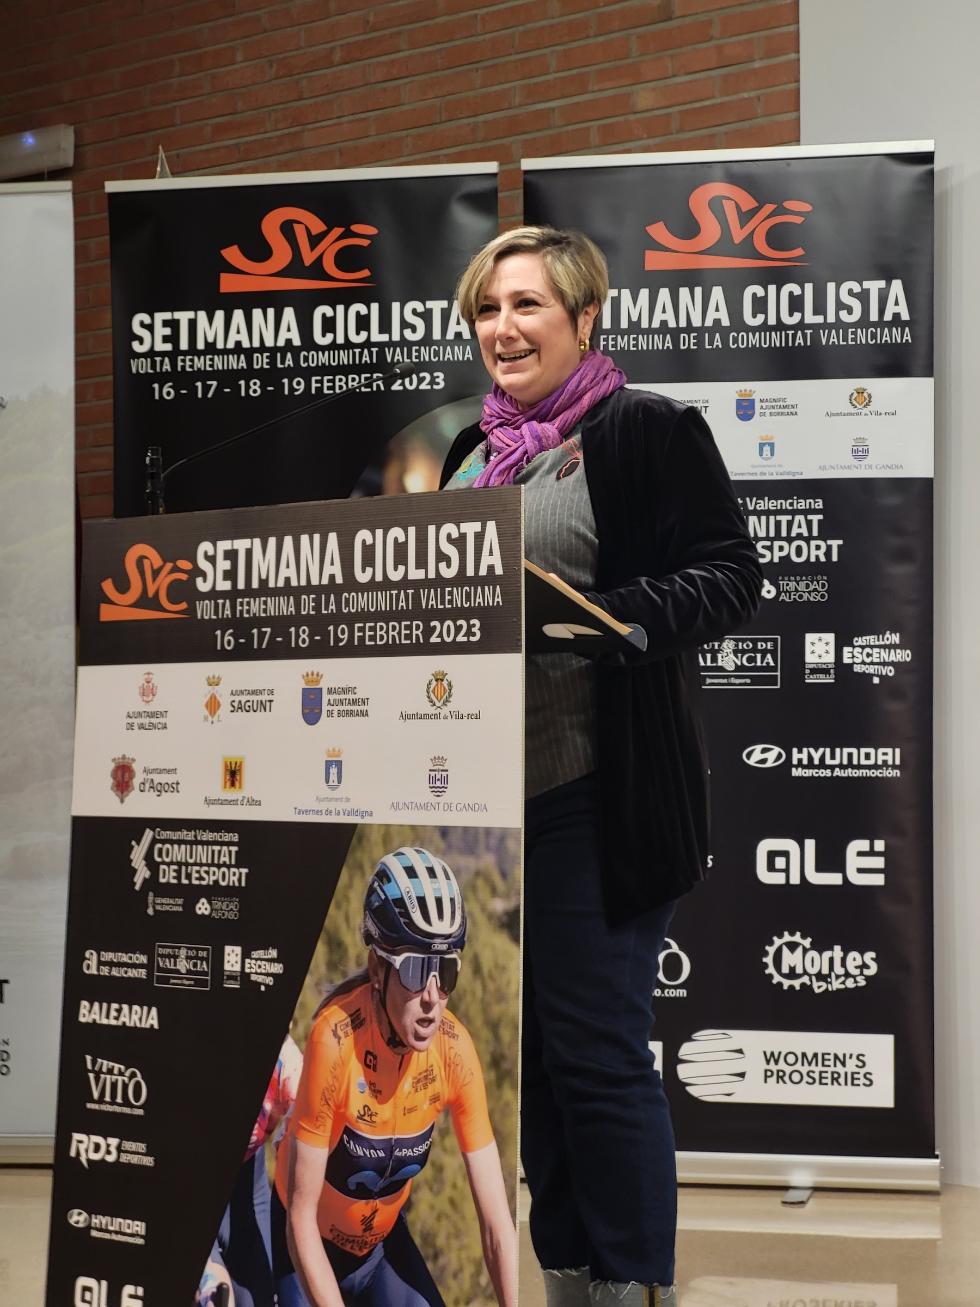 Tamarit: “La Setmana Ciclista valenciana ja és tot un referent internacional del ciclisme femení”